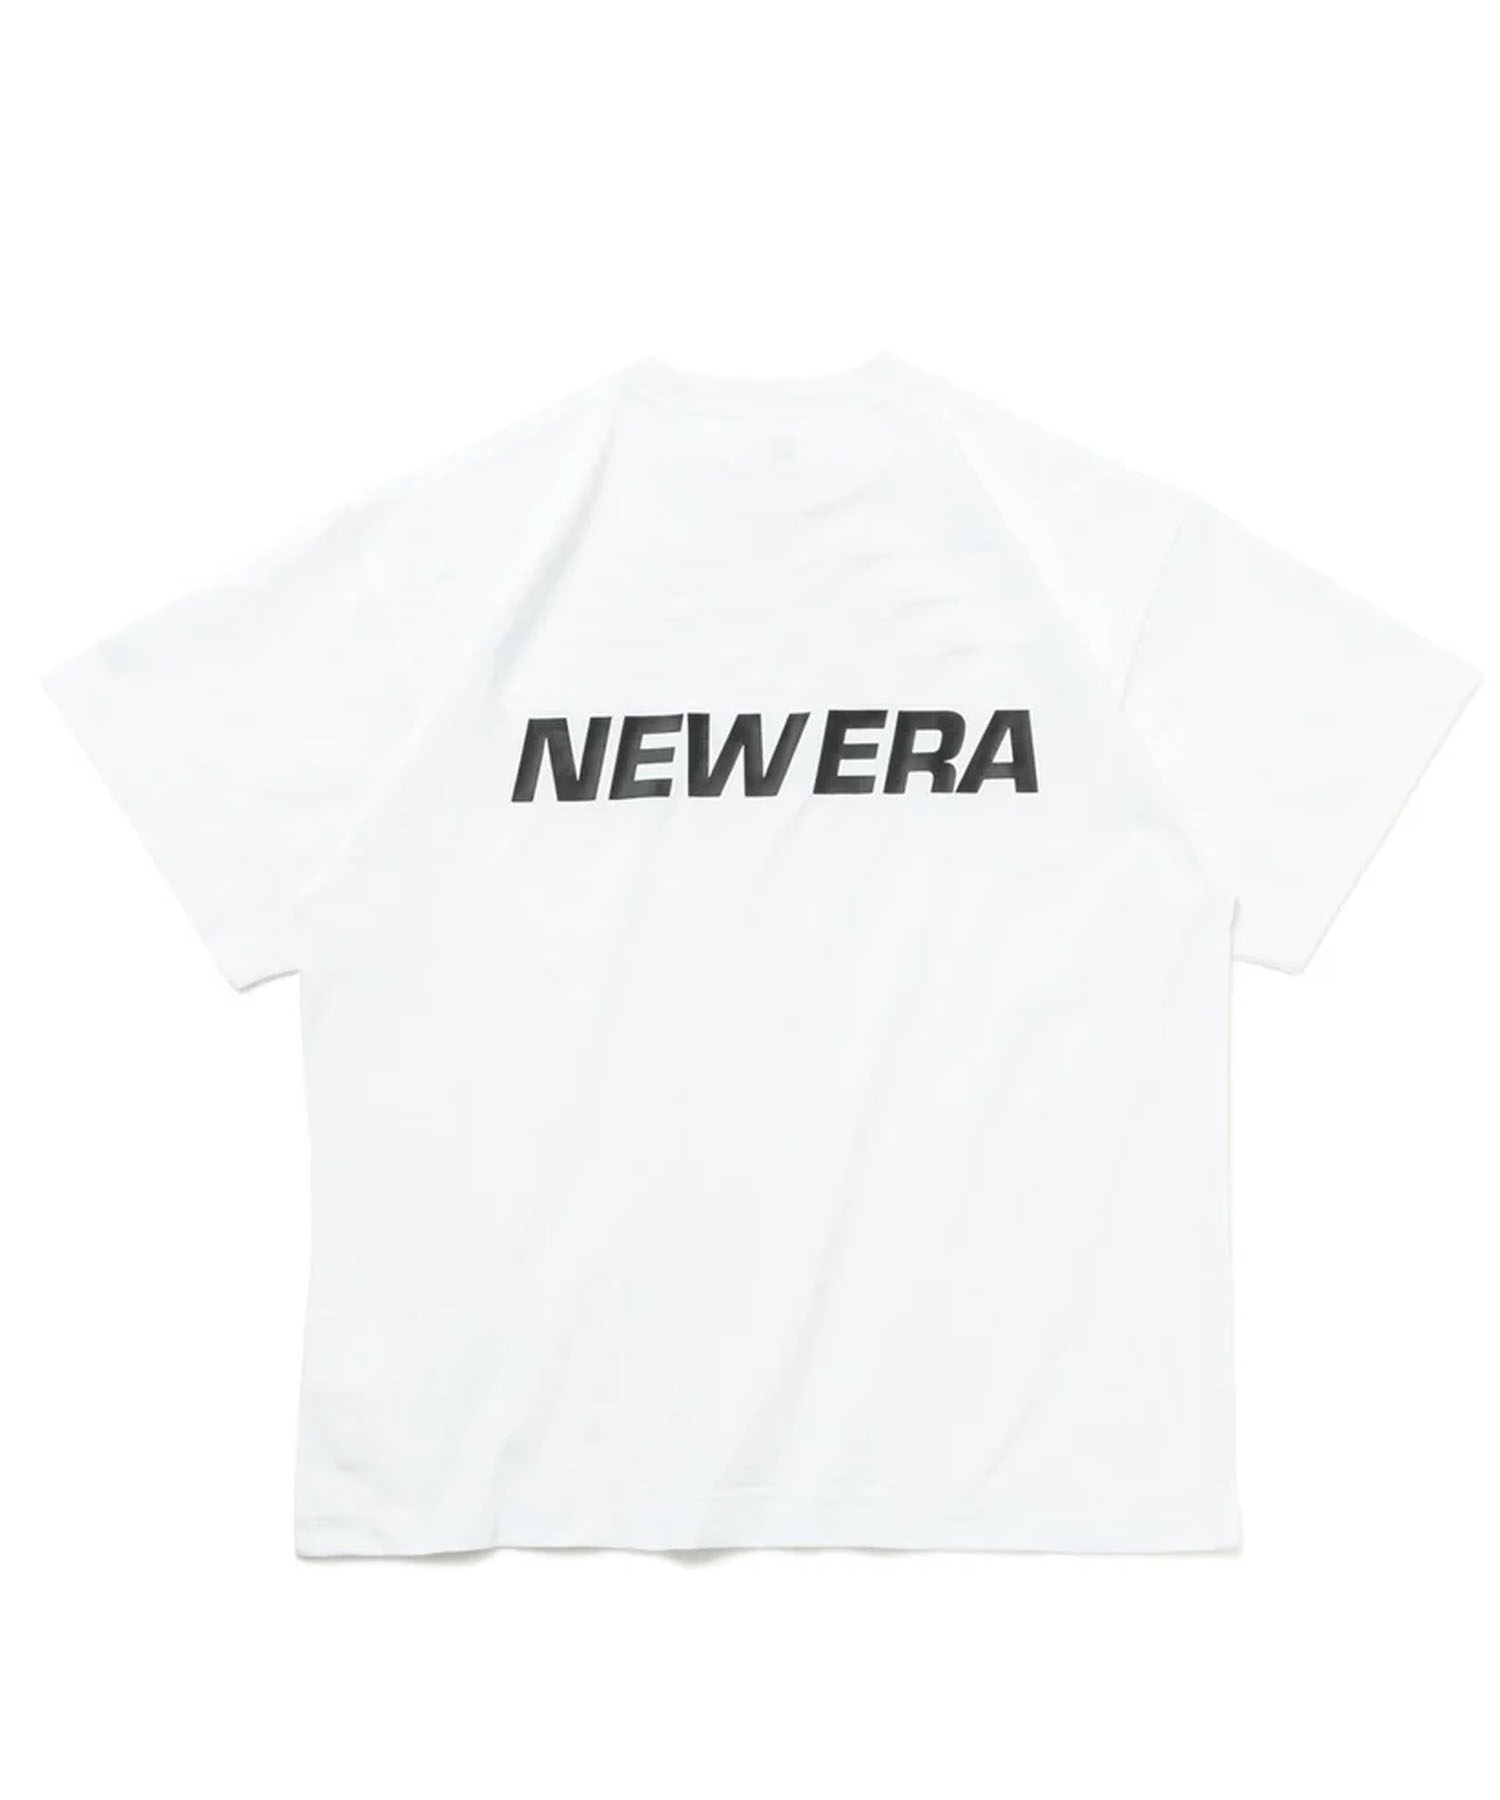 NEW ERA ニューエラ メンズ 半袖 Tシャツ ラッシュガード 水陸両用 ユーティリティ バックプリント 吸汗速乾 UVケア 14109969(WHI-M)